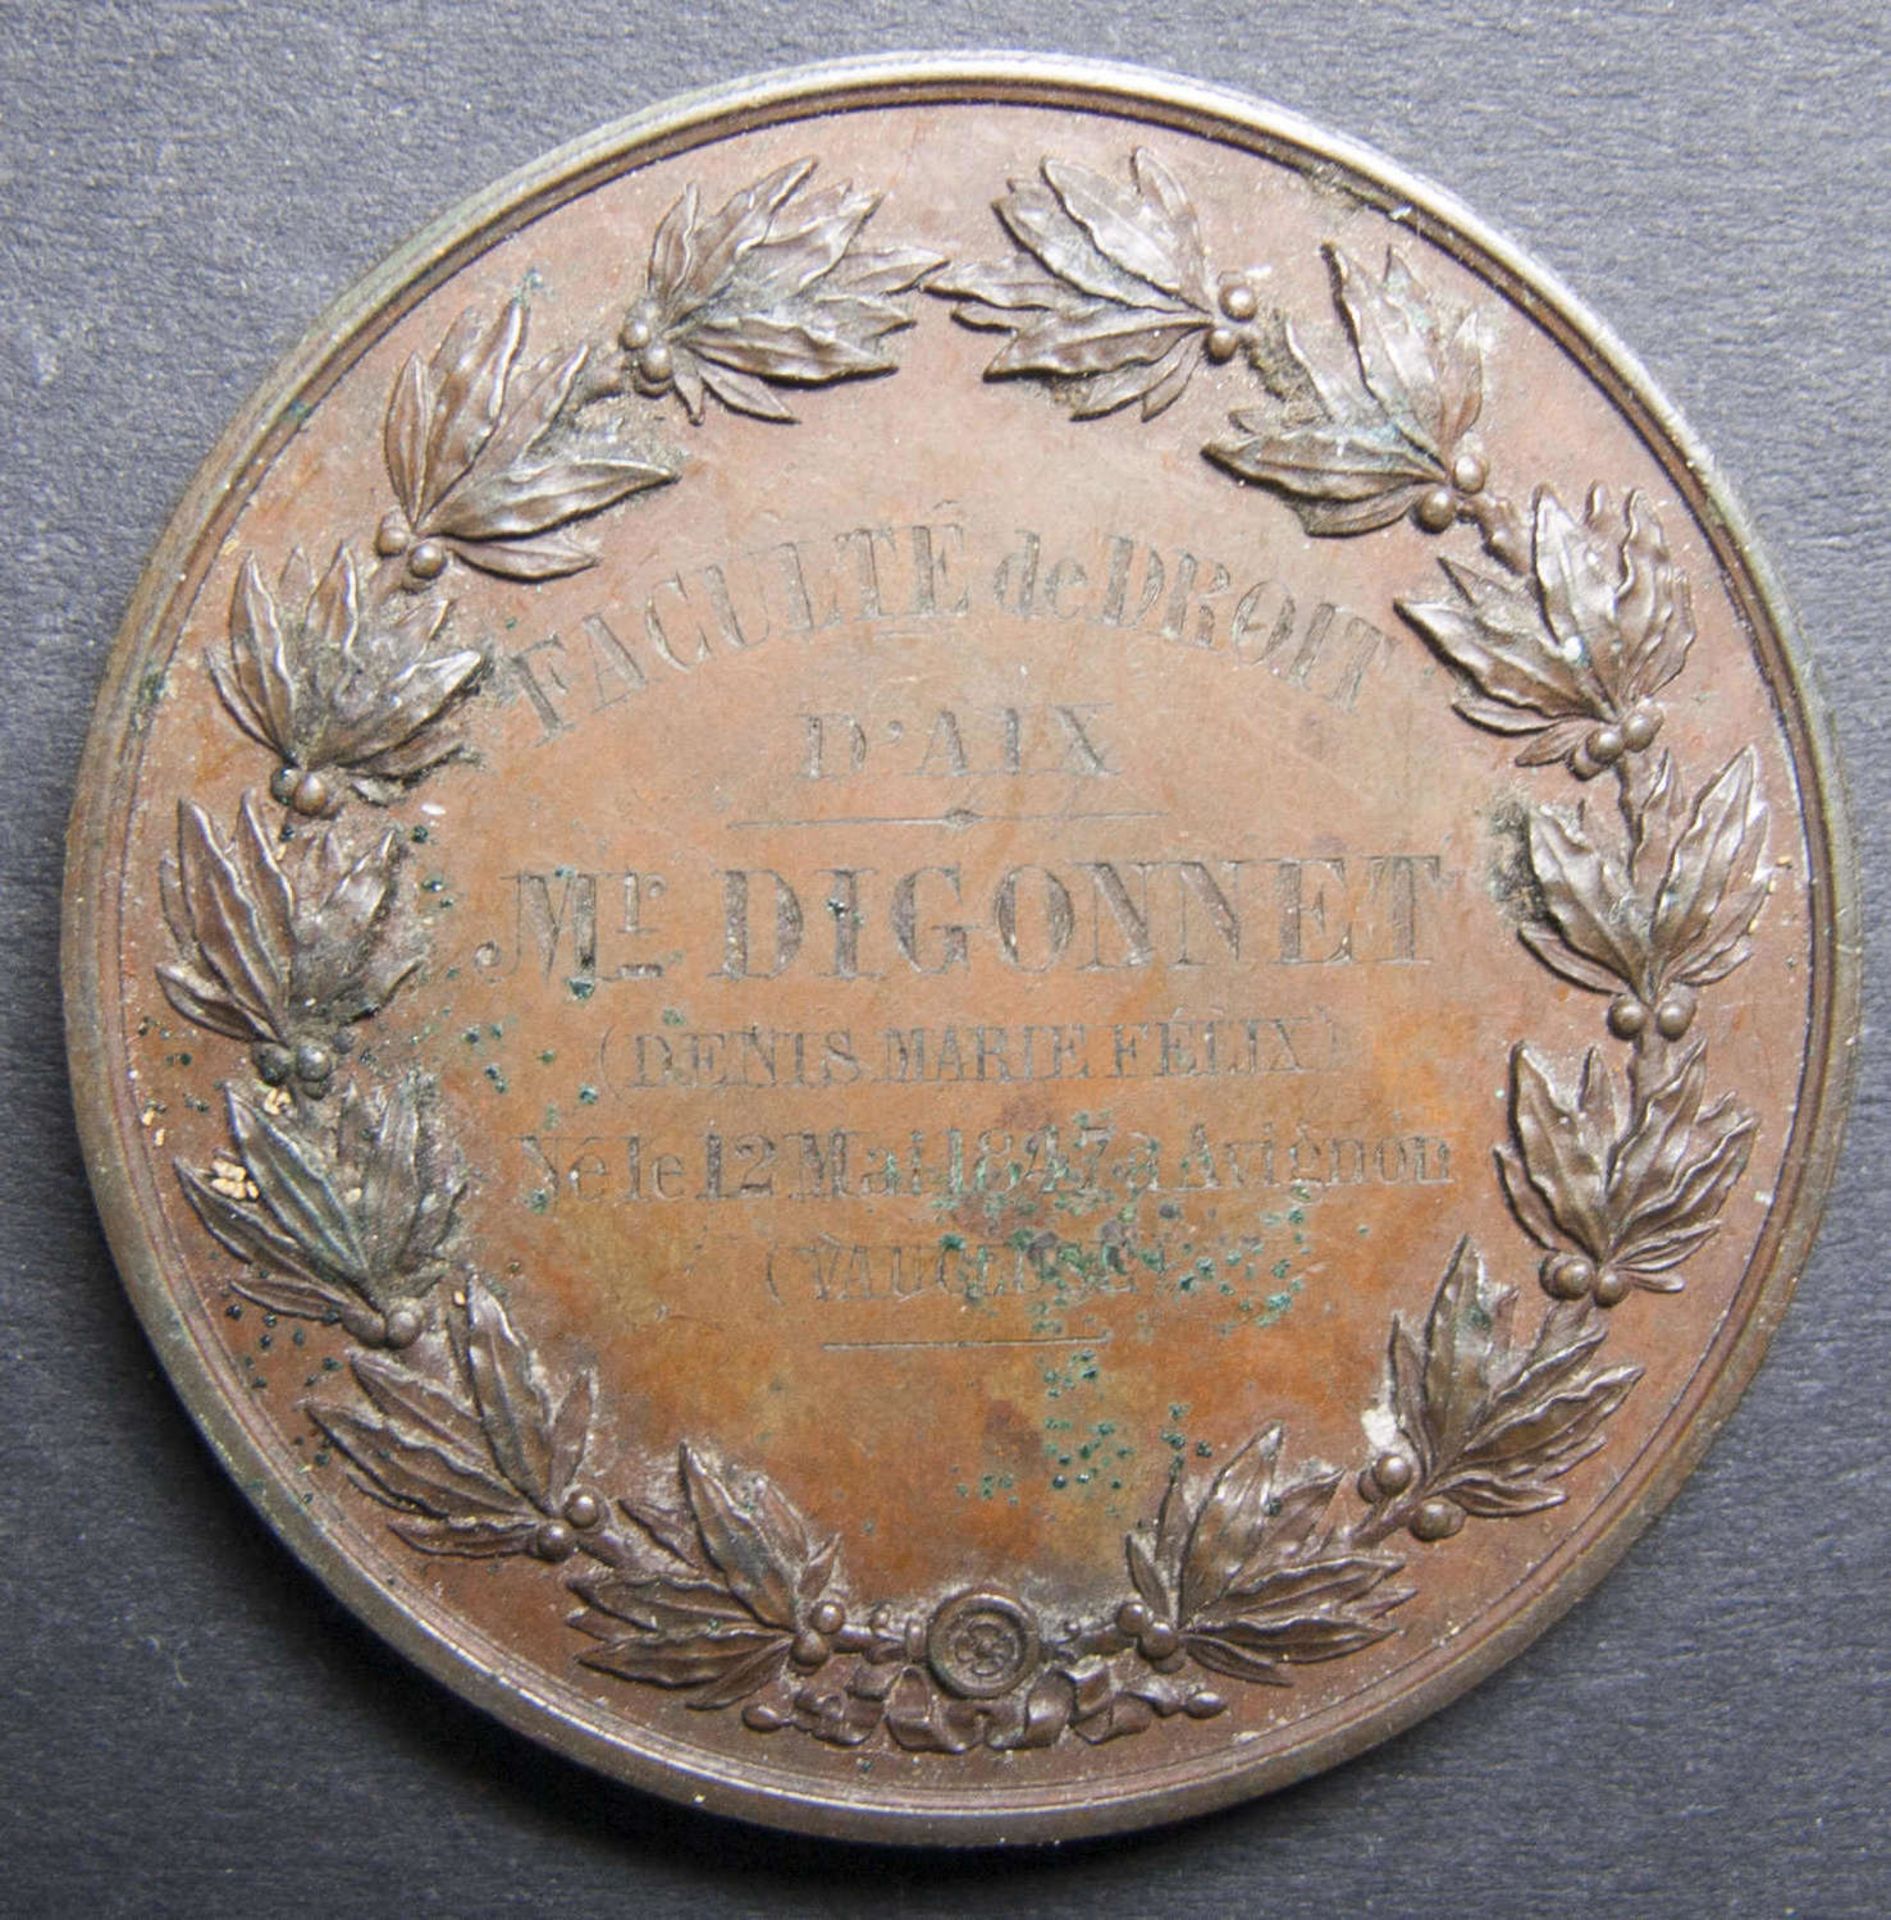 Medaille Licence de Droit francais.1870. Faculte de droit A´Aix. Kupfer.Medal License de Droit